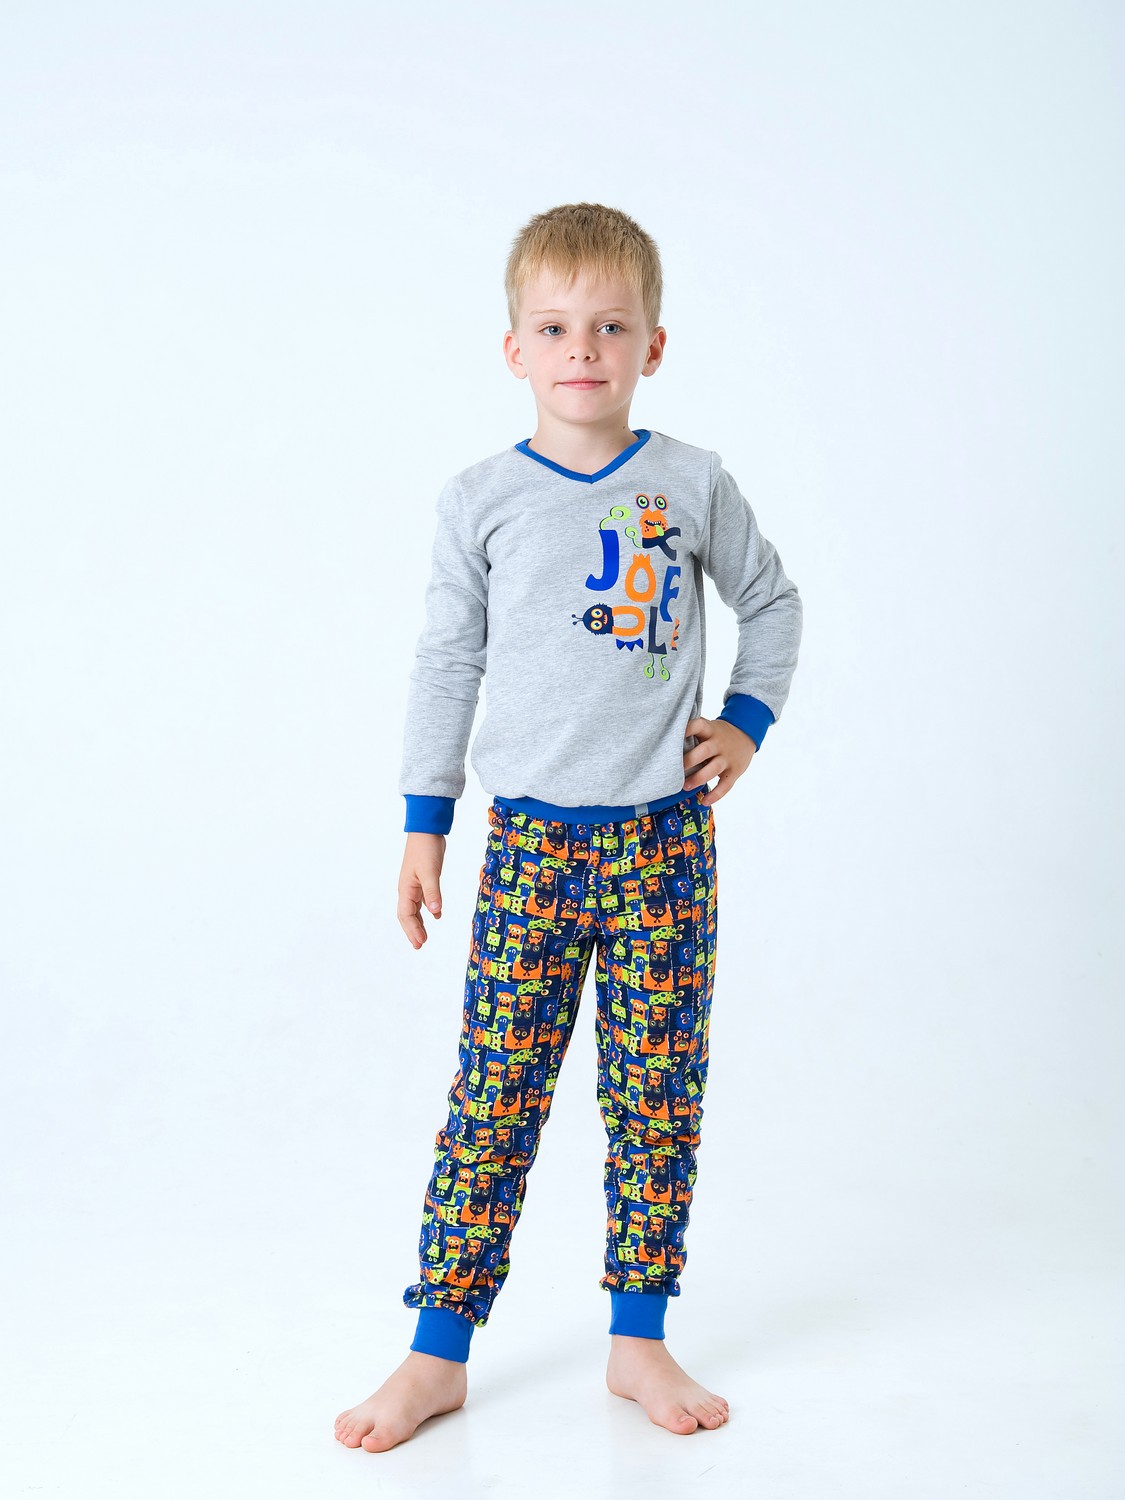 Пижама для мальчика, арт. 104419, возраст от 7 до 10 лет